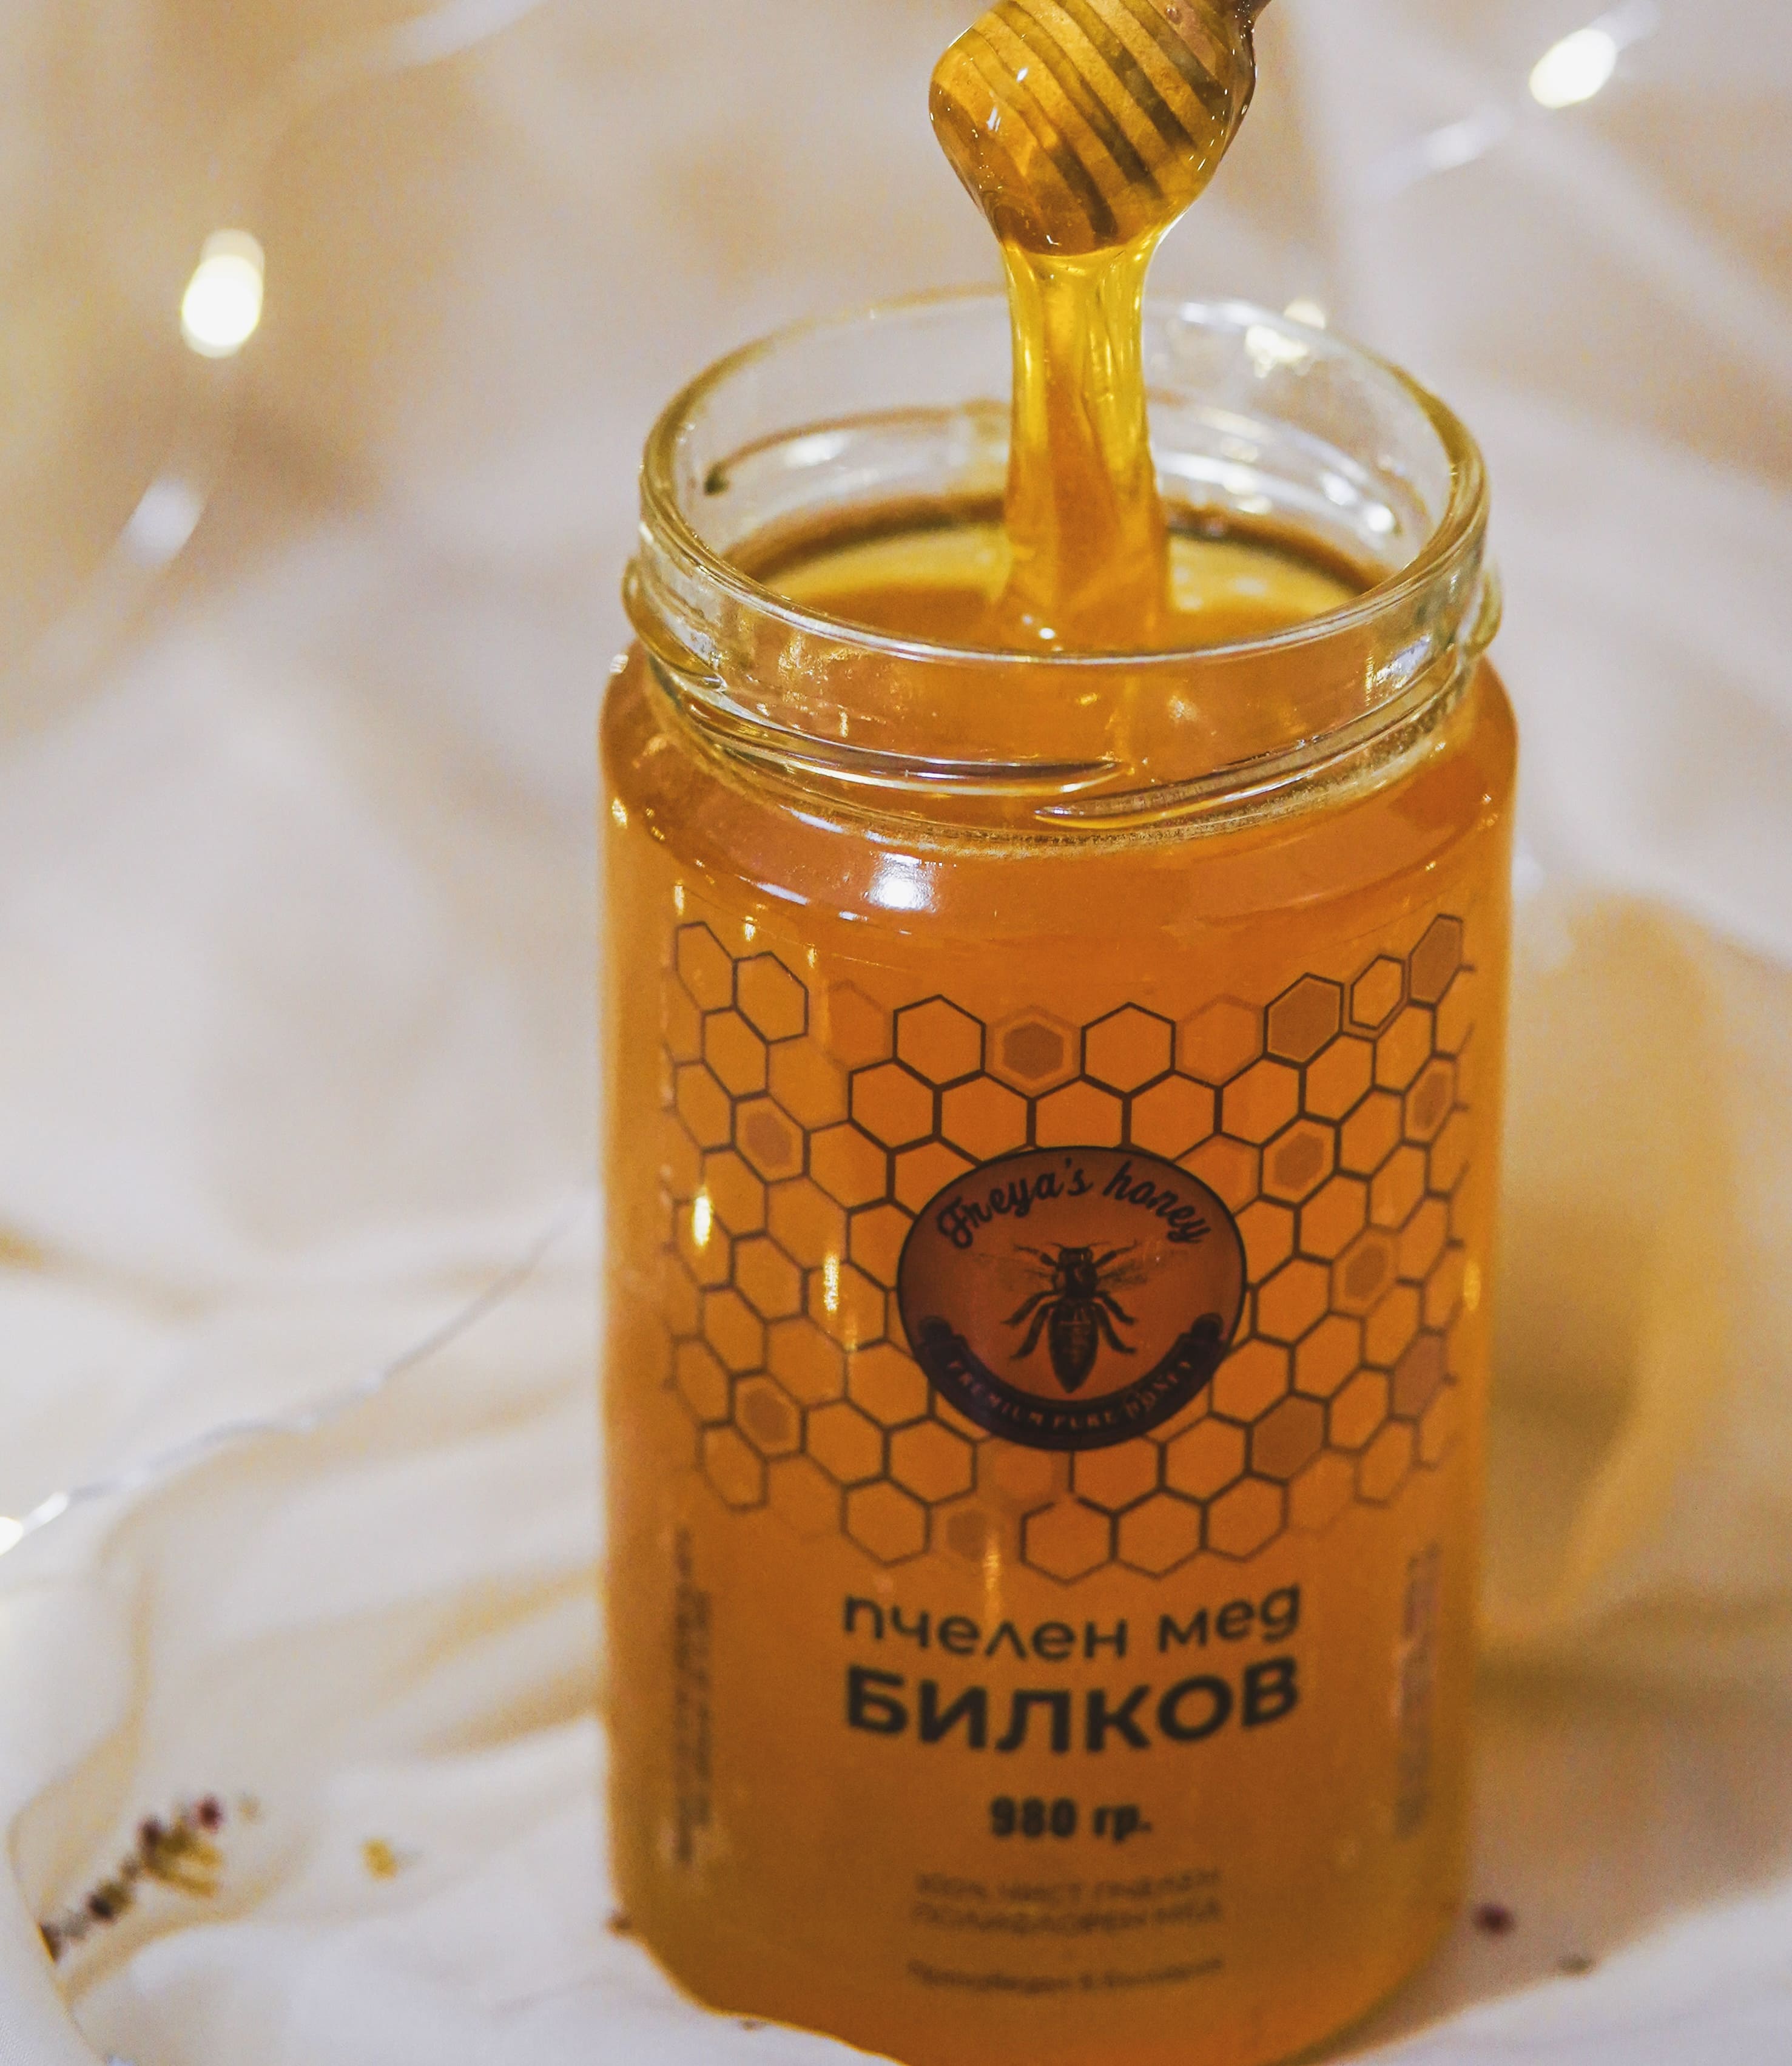 Пчелен мед, Билков